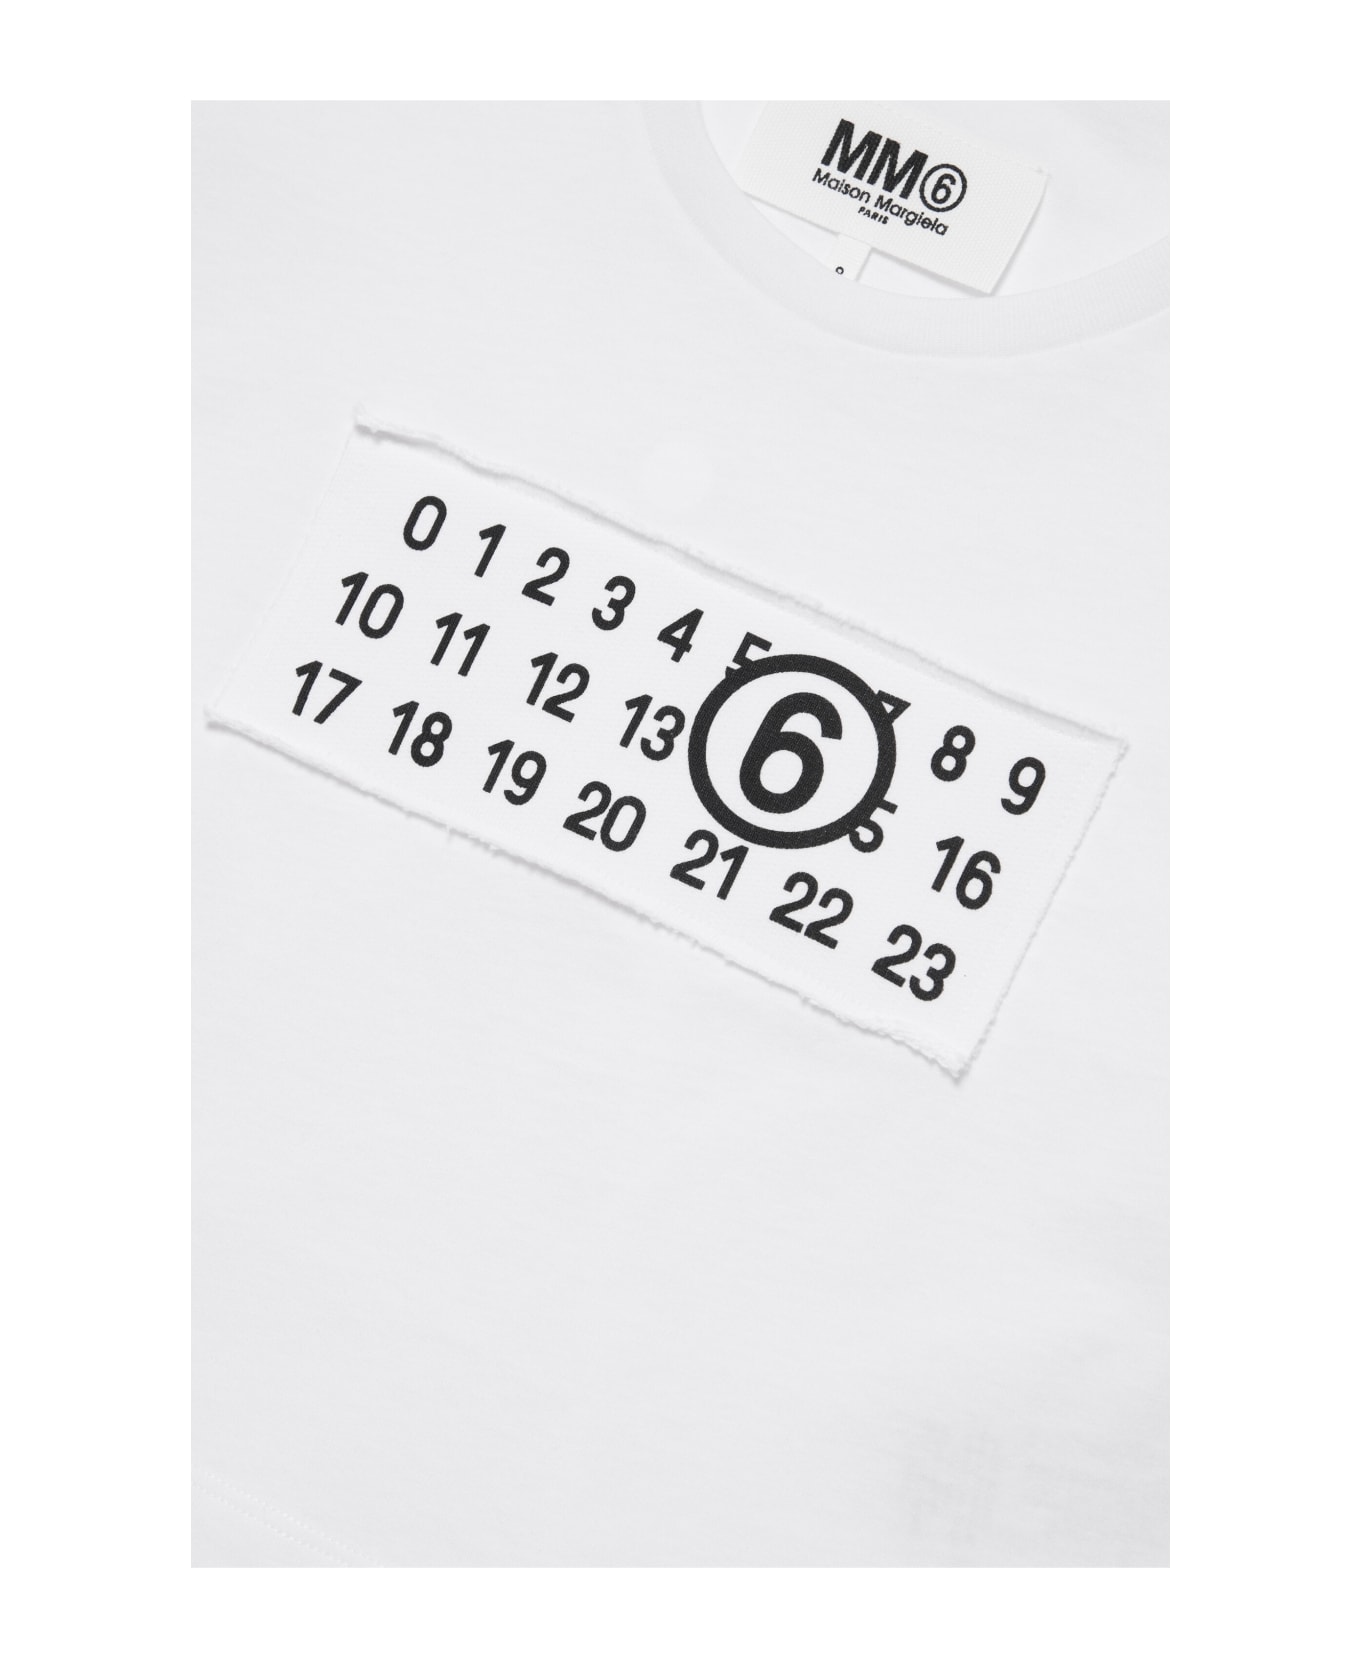 MM6 Maison Margiela Mm6t87u T-shirt Maison Margiela Cropped T-shirt Branded With Numeric Logo - Bianco